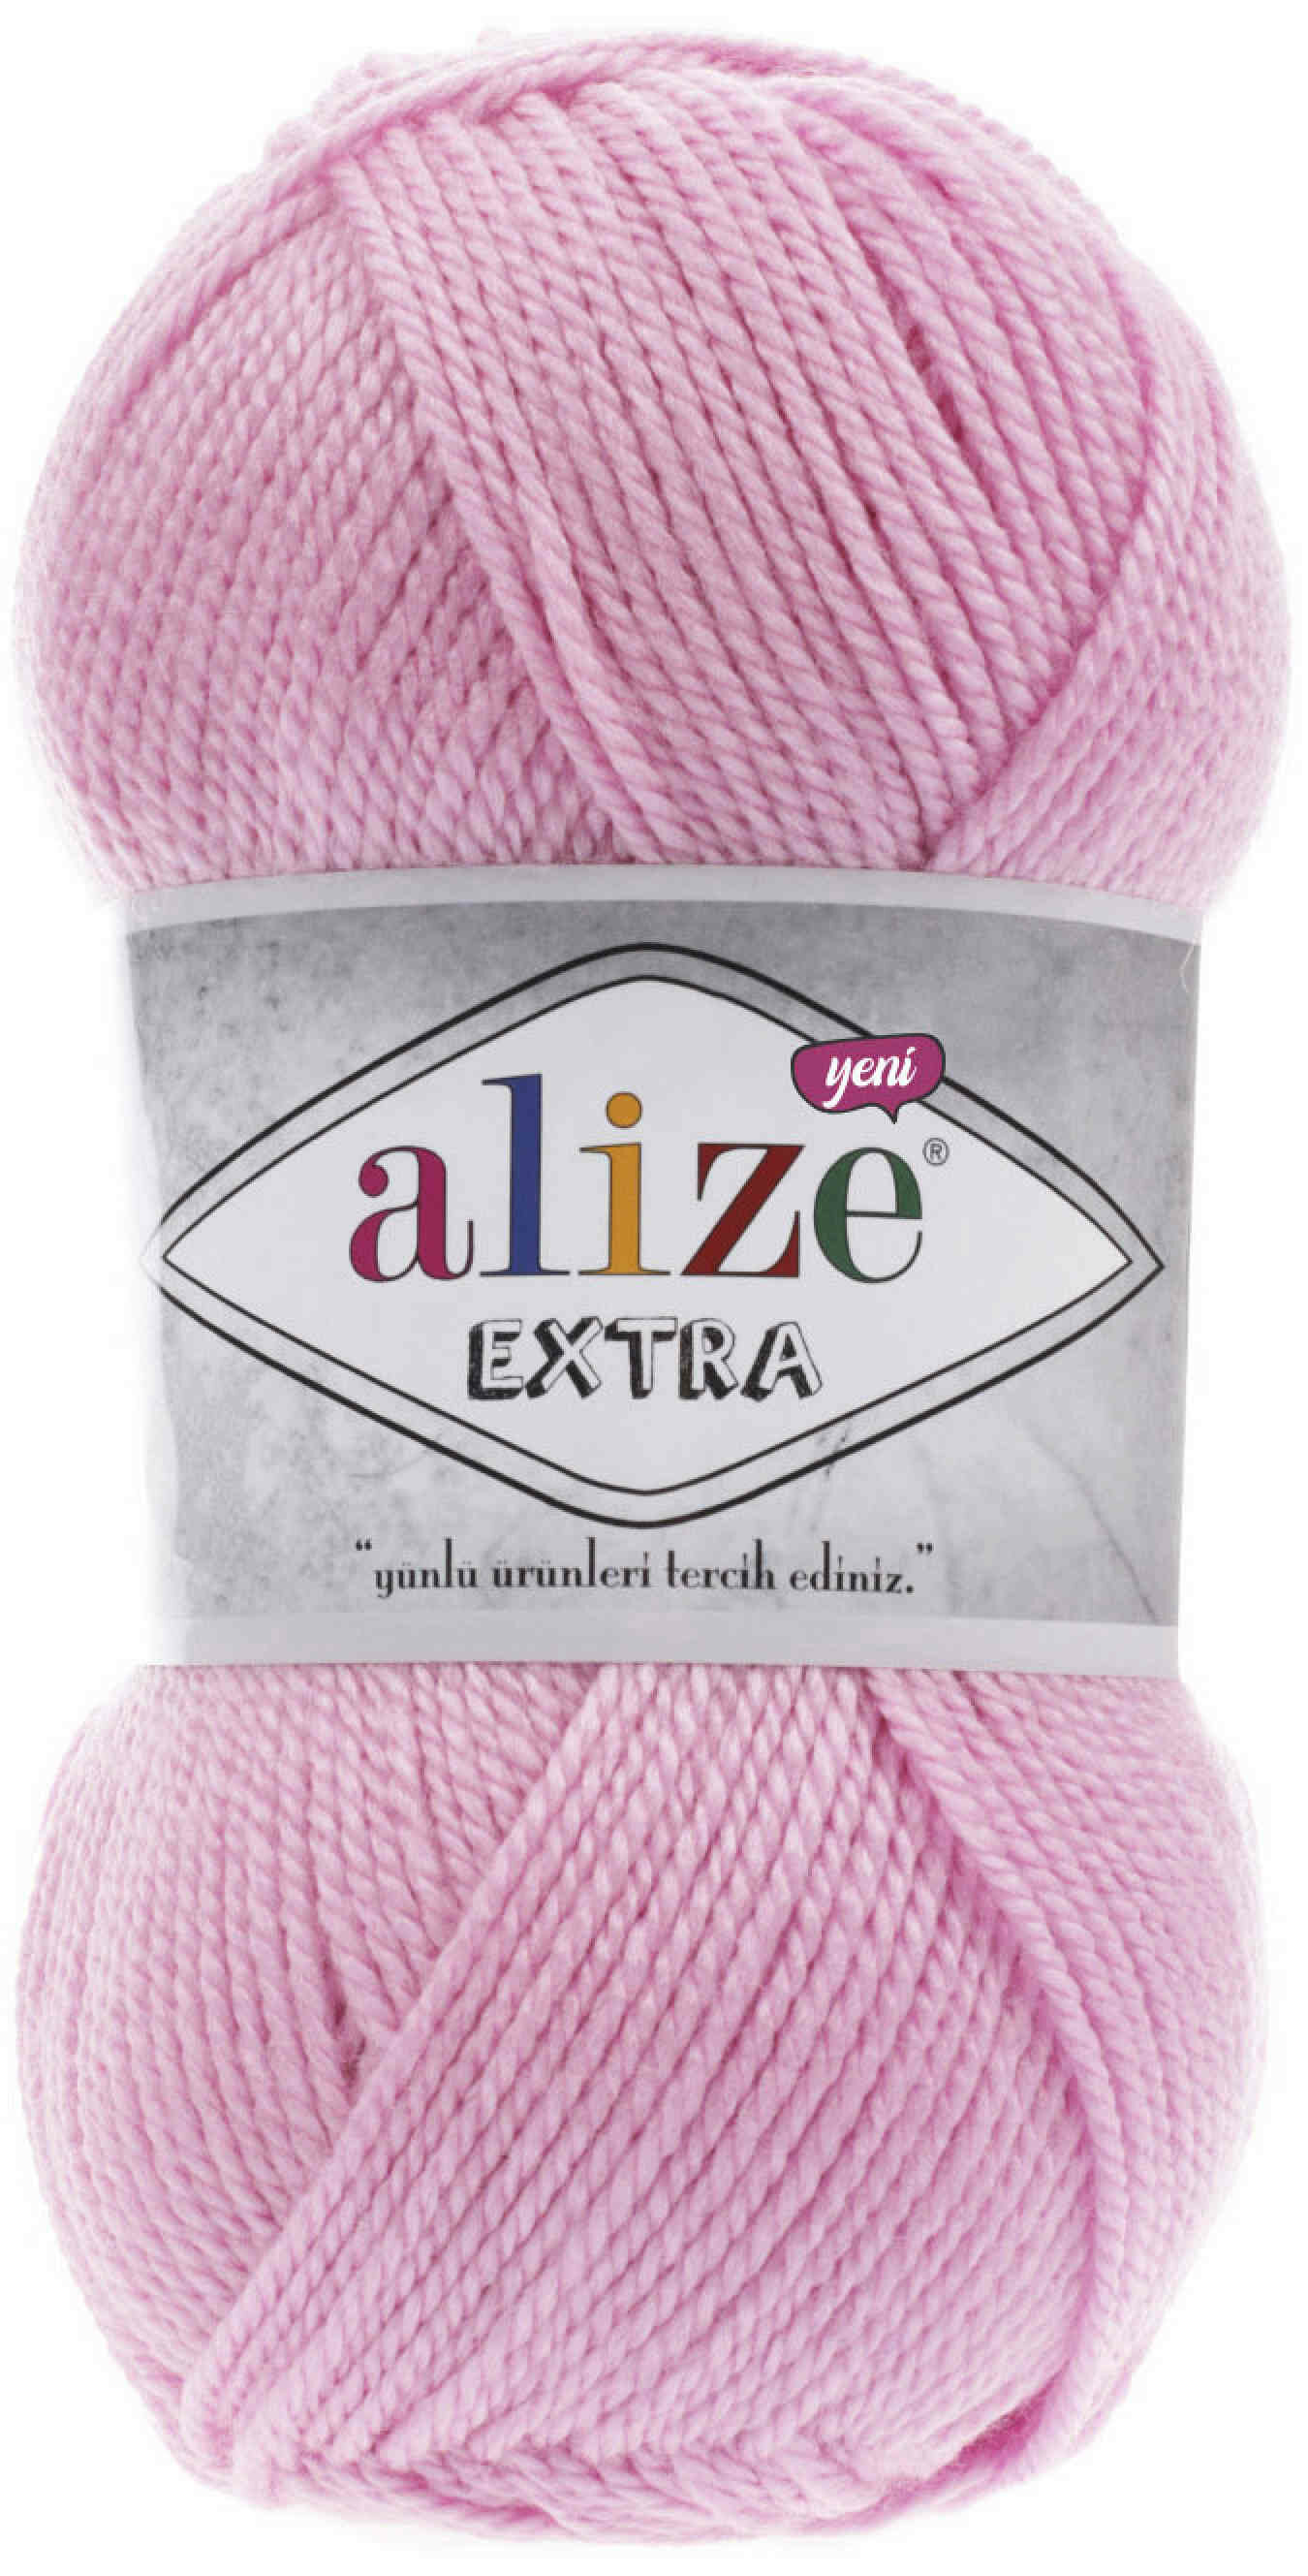 Пряжа Alize Extra ярко-розовый (191) 100%акрил 220м 100г 2шт